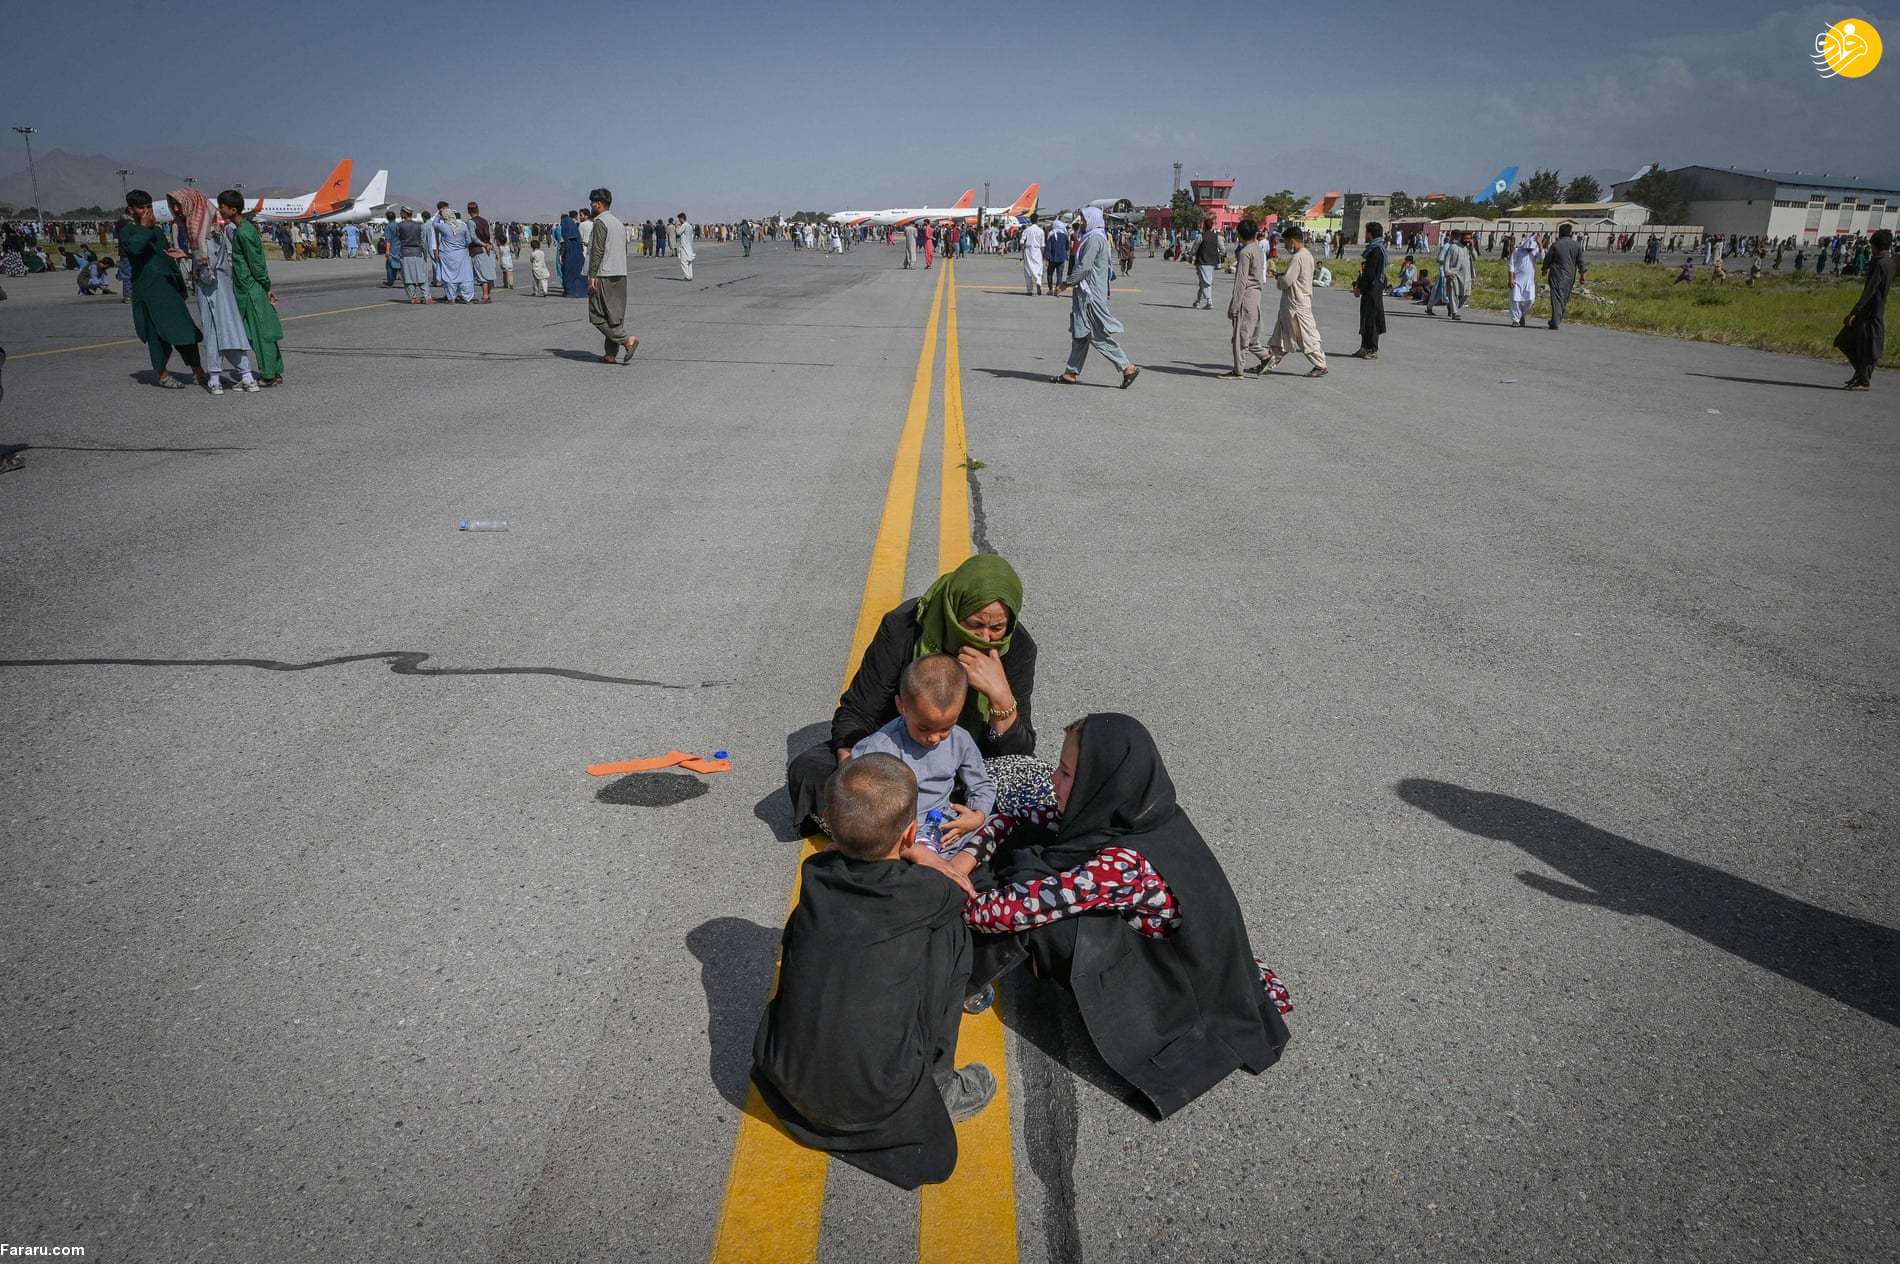 تصاویر عجیب از حضور ۶۴۰ افغان در هواپیمای نظامی آمریکا!